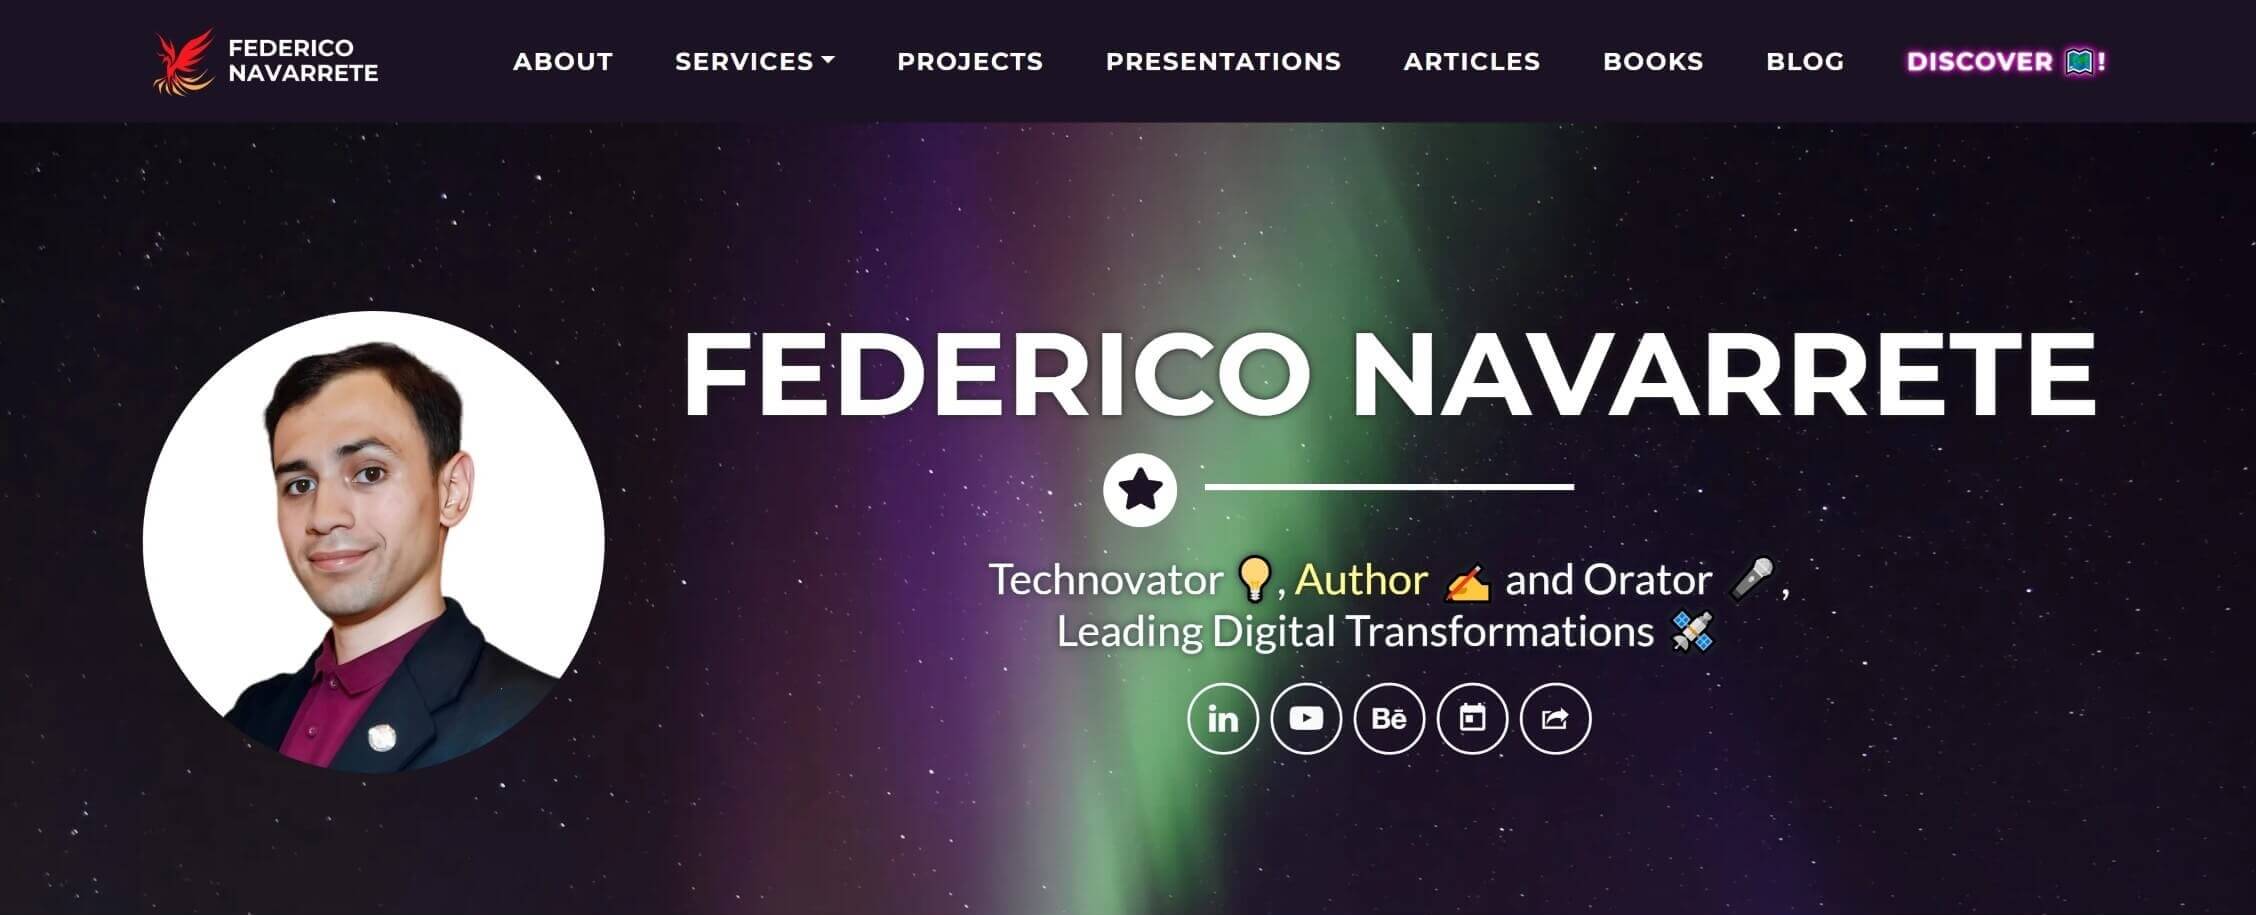 (c) Federiconavarrete.com